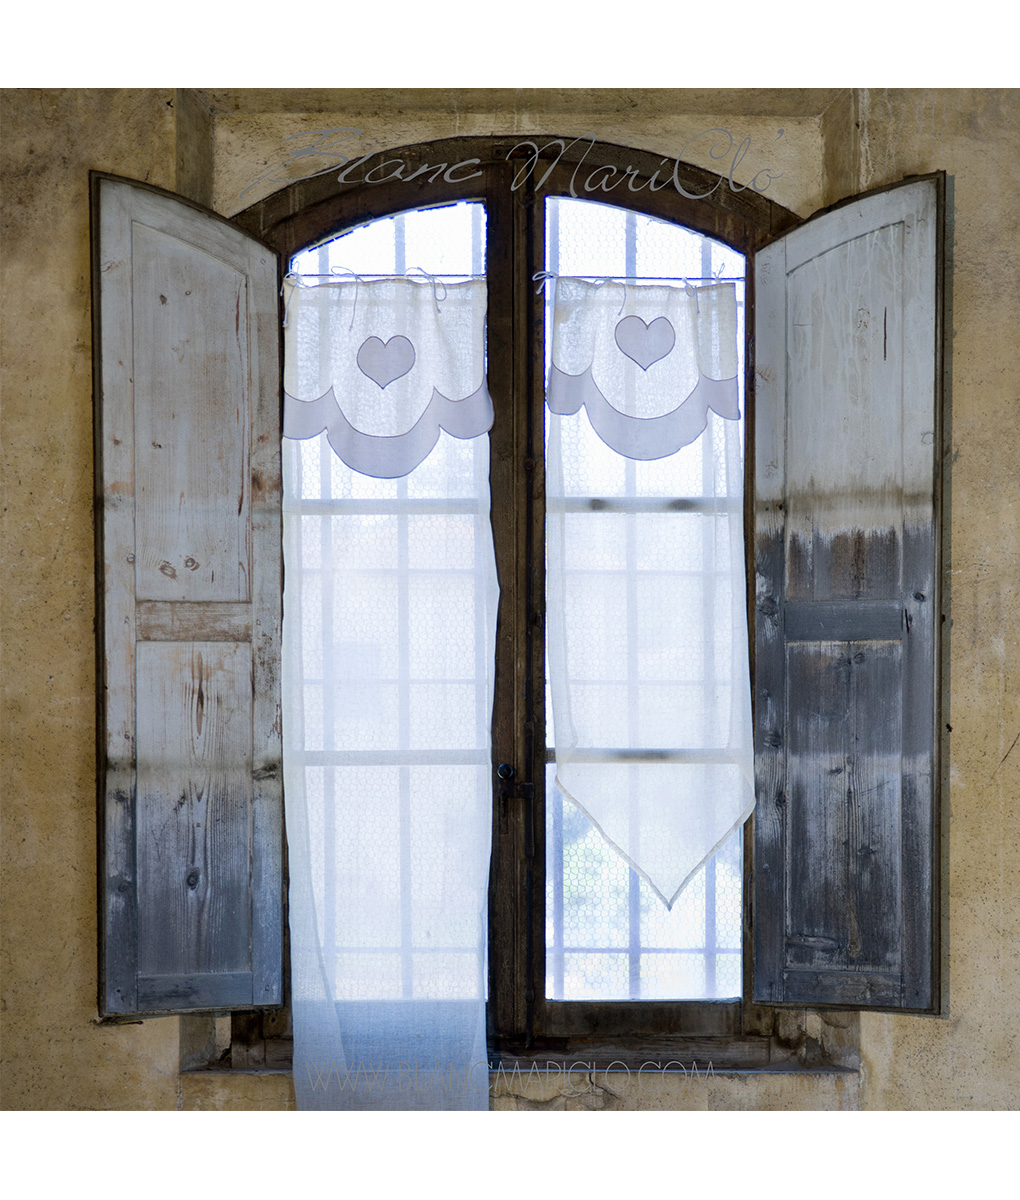 Coppia 2 Tende finestra con mantovana Blanc Mariclo 45x60 cm - Blanc  MariClo' Reggio Emilia